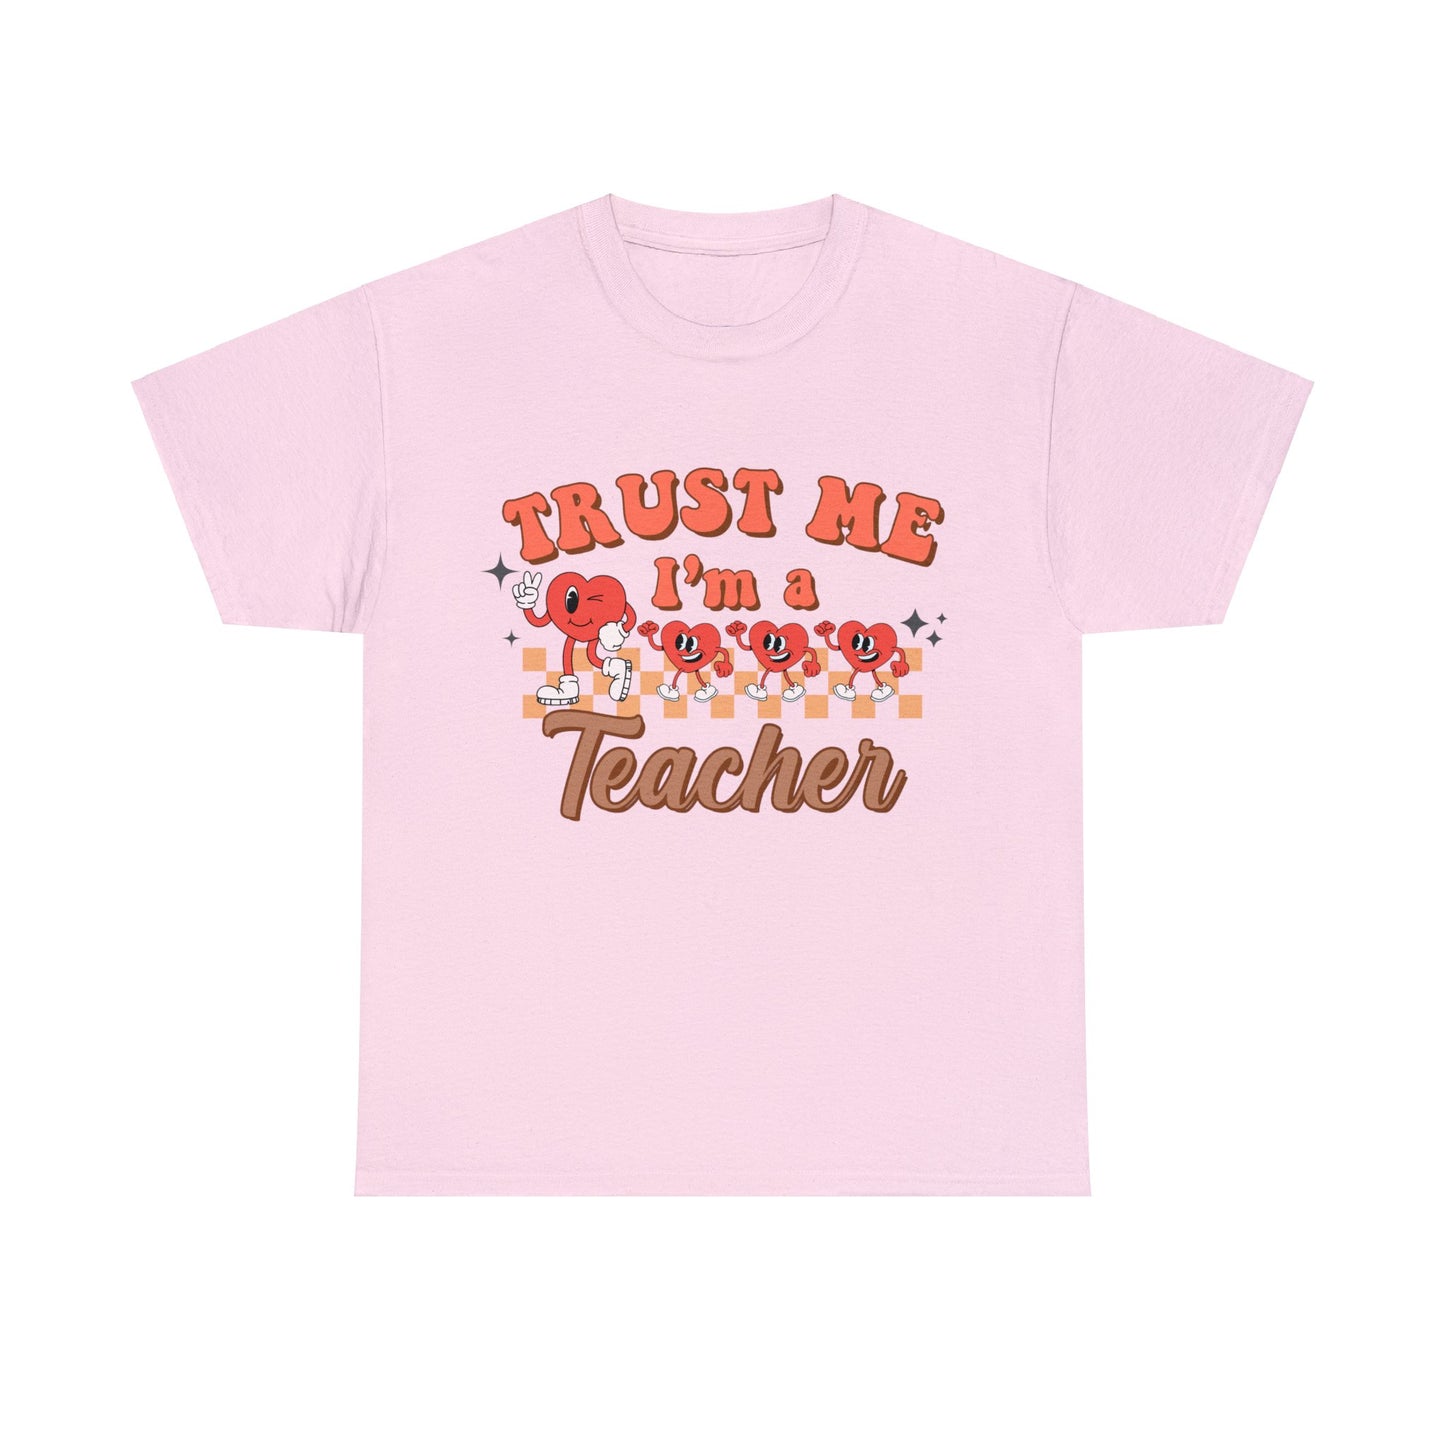 Trust me I'm a Teacher - Unisex T-Shirt